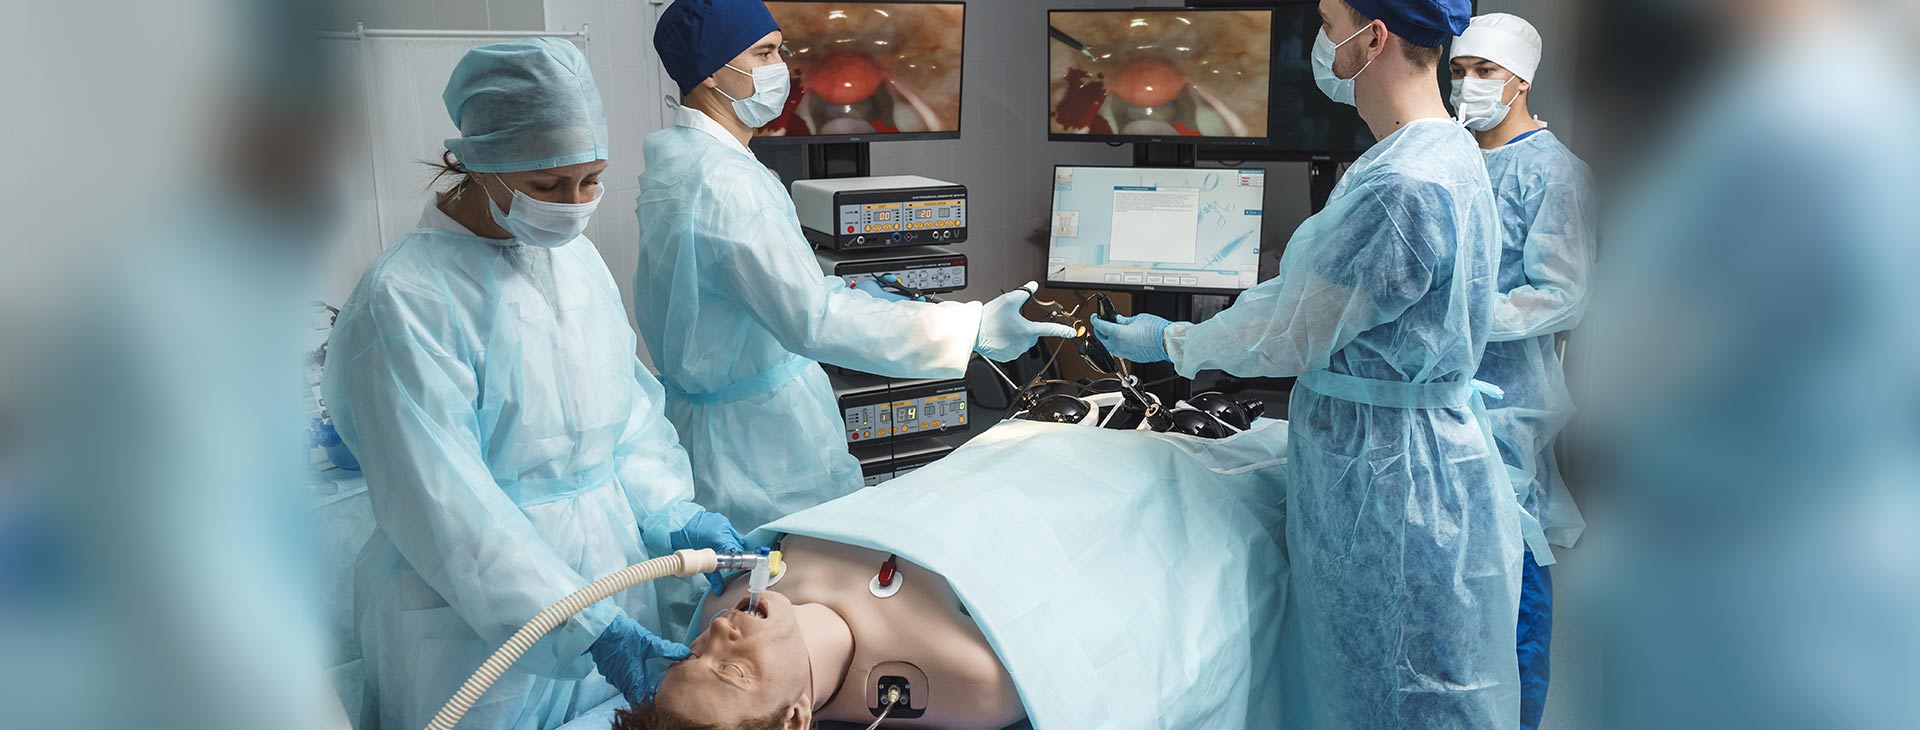 手术室全景现实虚拟模拟器